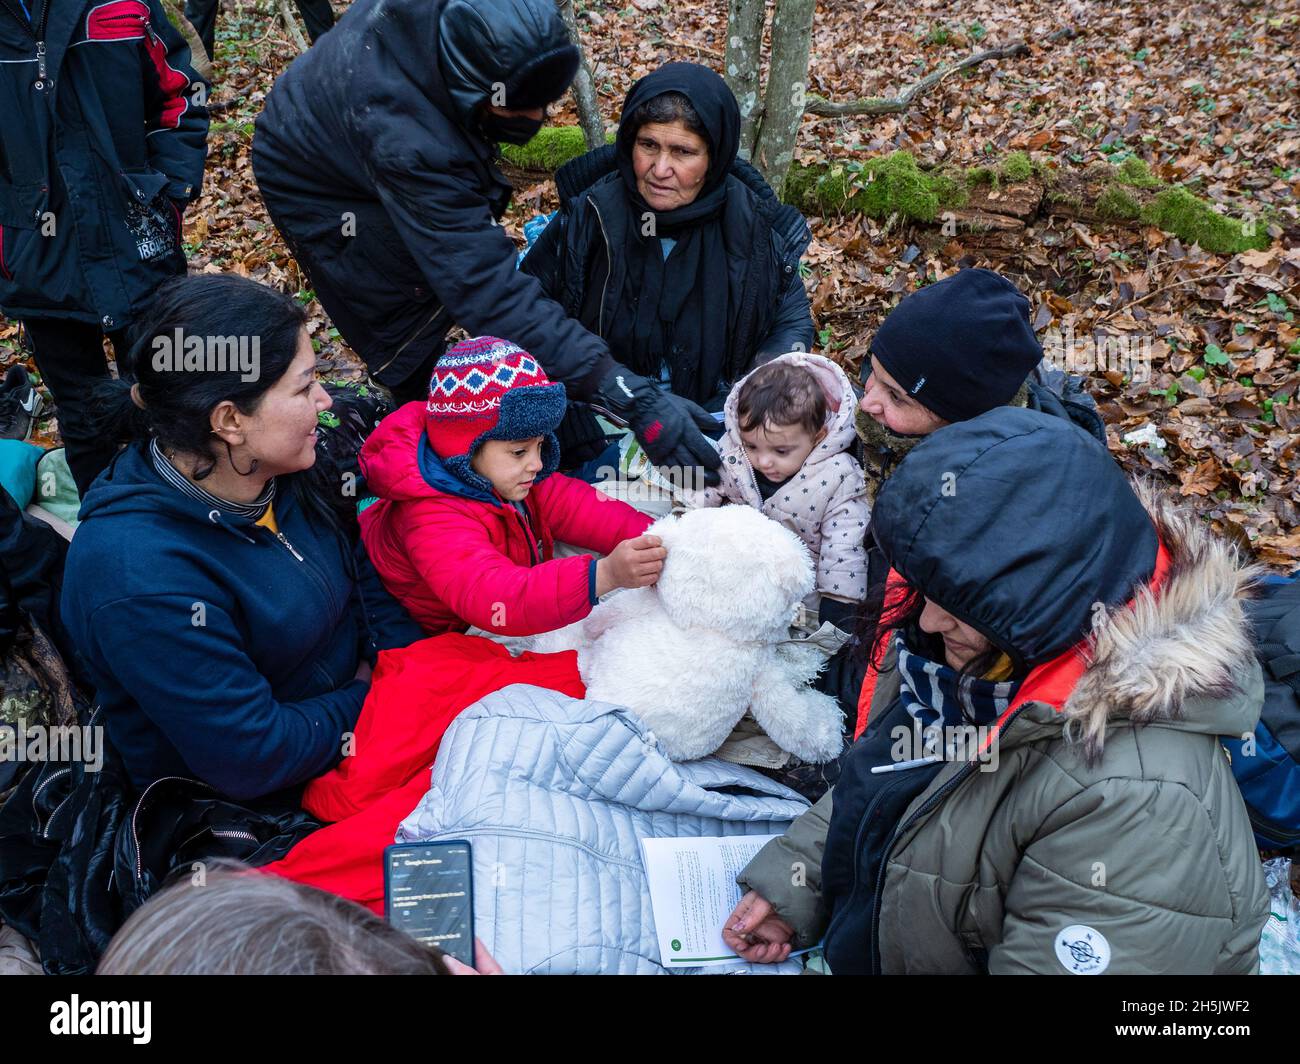 Die Kinder wurden beim Spielen mit einem Spielzeug der Organisation Grupa Granica gesehen.Eine siebzehnköpfige Flüchtlingsfamilie, darunter neun Kinder aus Dohuk, Irak, verbrachte siebzehn Tage in einem Wald an der polnischen Grenze in Weißrussland und wurde achtmal zurückgedrängt. Verzweifelt mit einem sieben Monate alten Baby und einer älteren Frau mit Beinproblemen beschlossen sie, Aktivisten um Hilfe zu bitten. (Foto von Jana Cavojska / SOPA Images/Sipa USA) Stockfoto